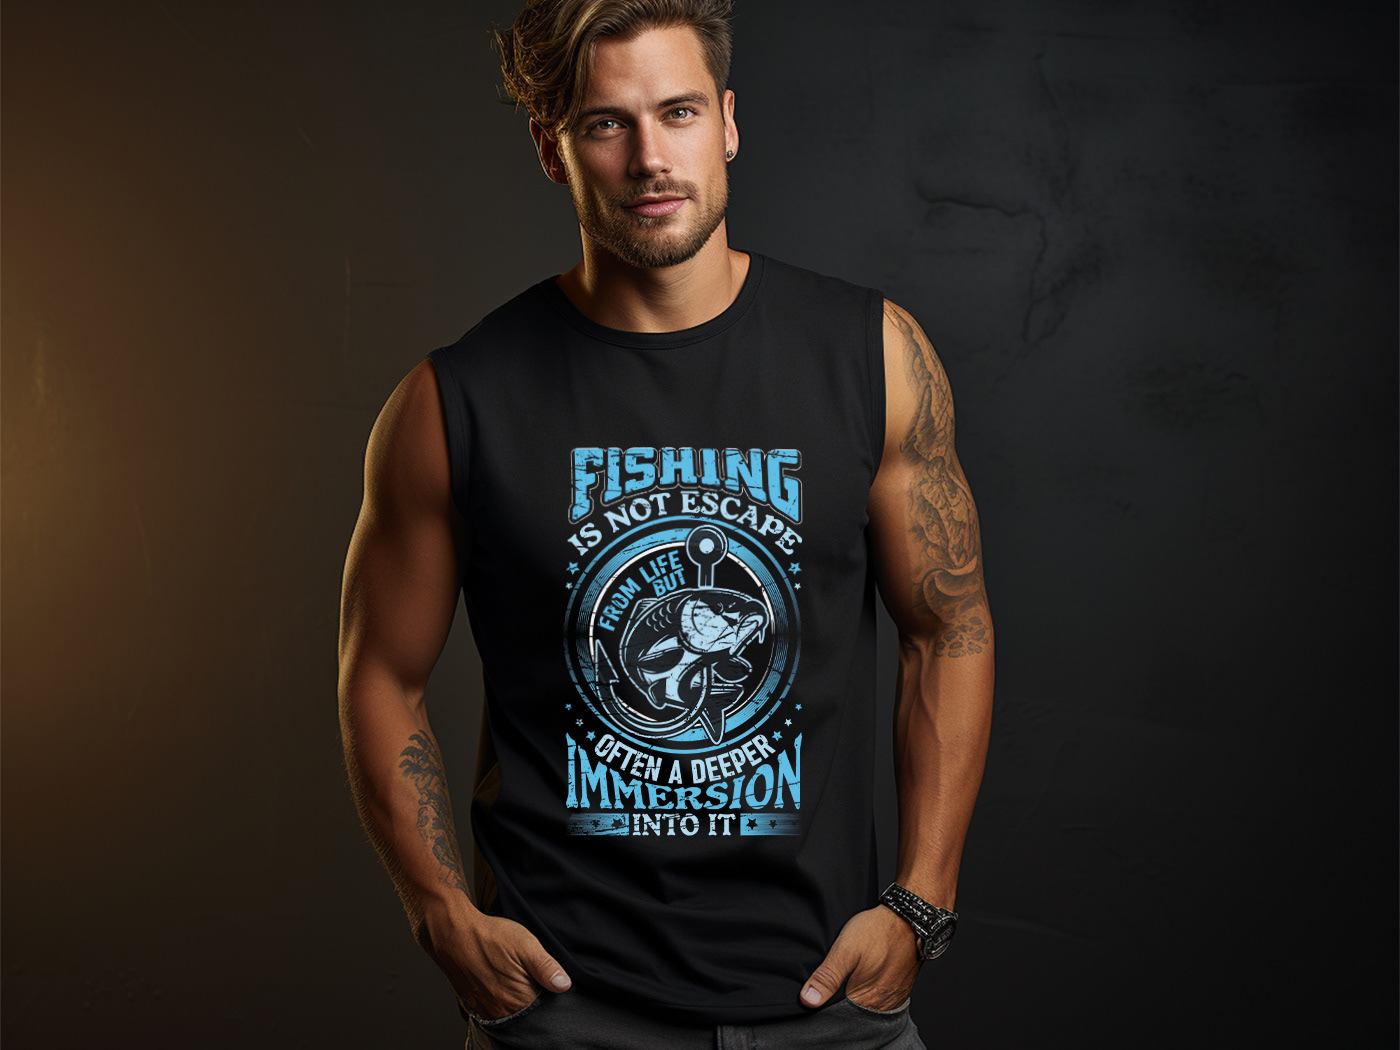 Stylish Fishing T-shirt Design